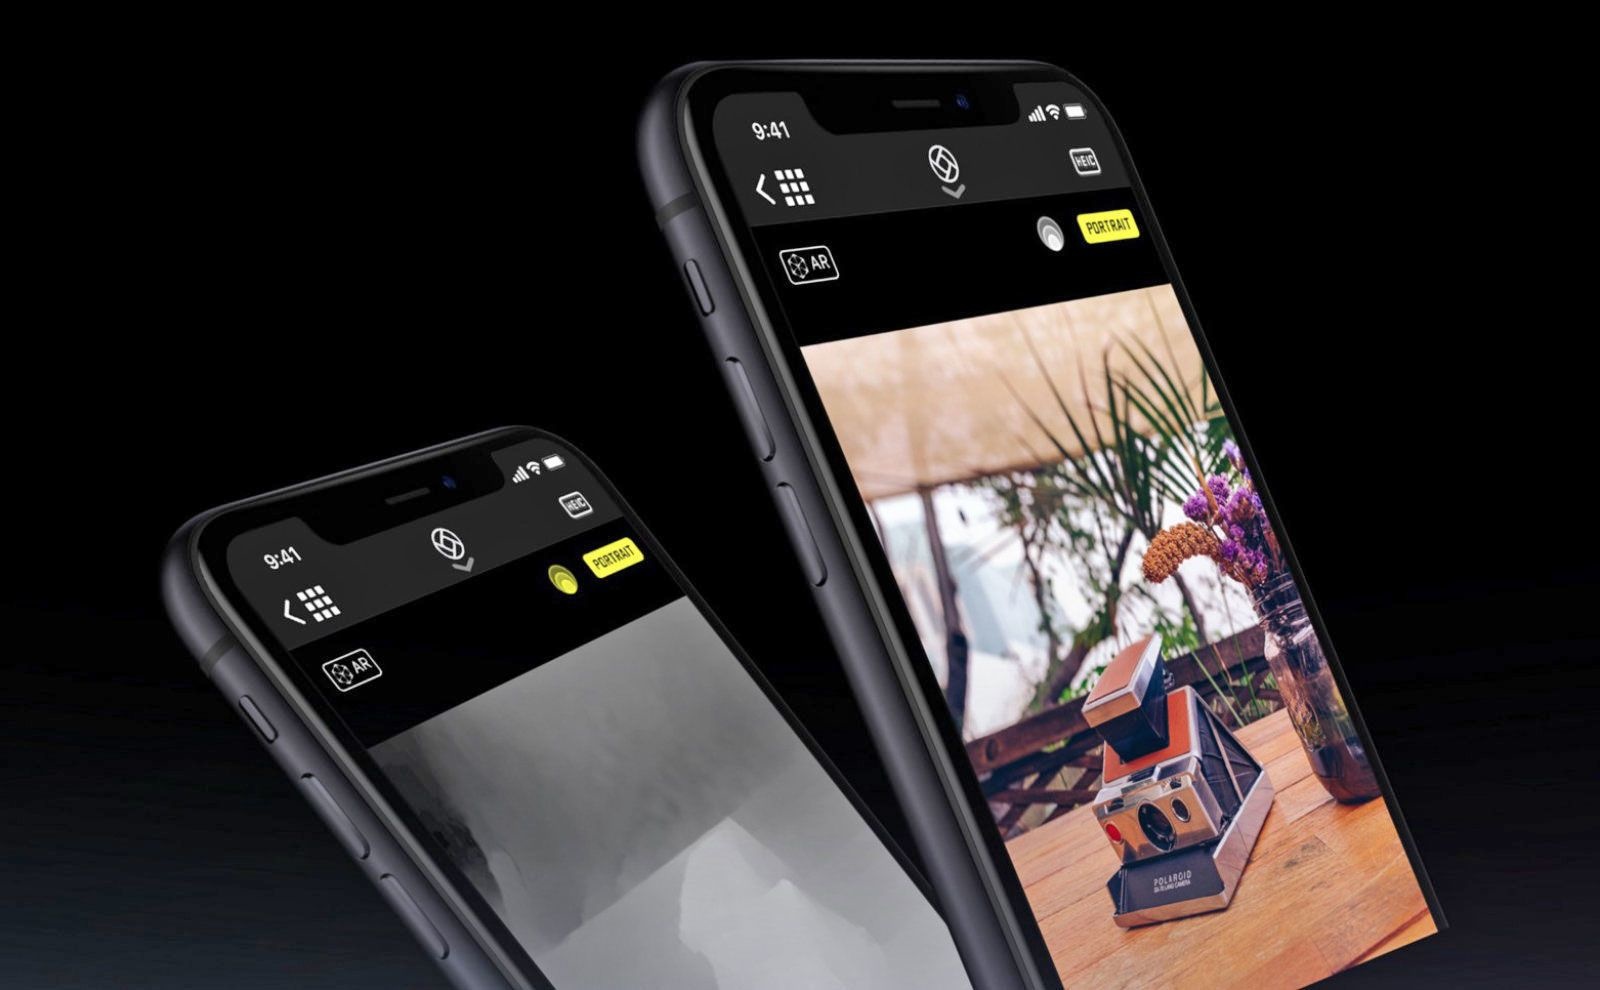 Những tính năng mới của Camera iPhone khi lên iOS 14